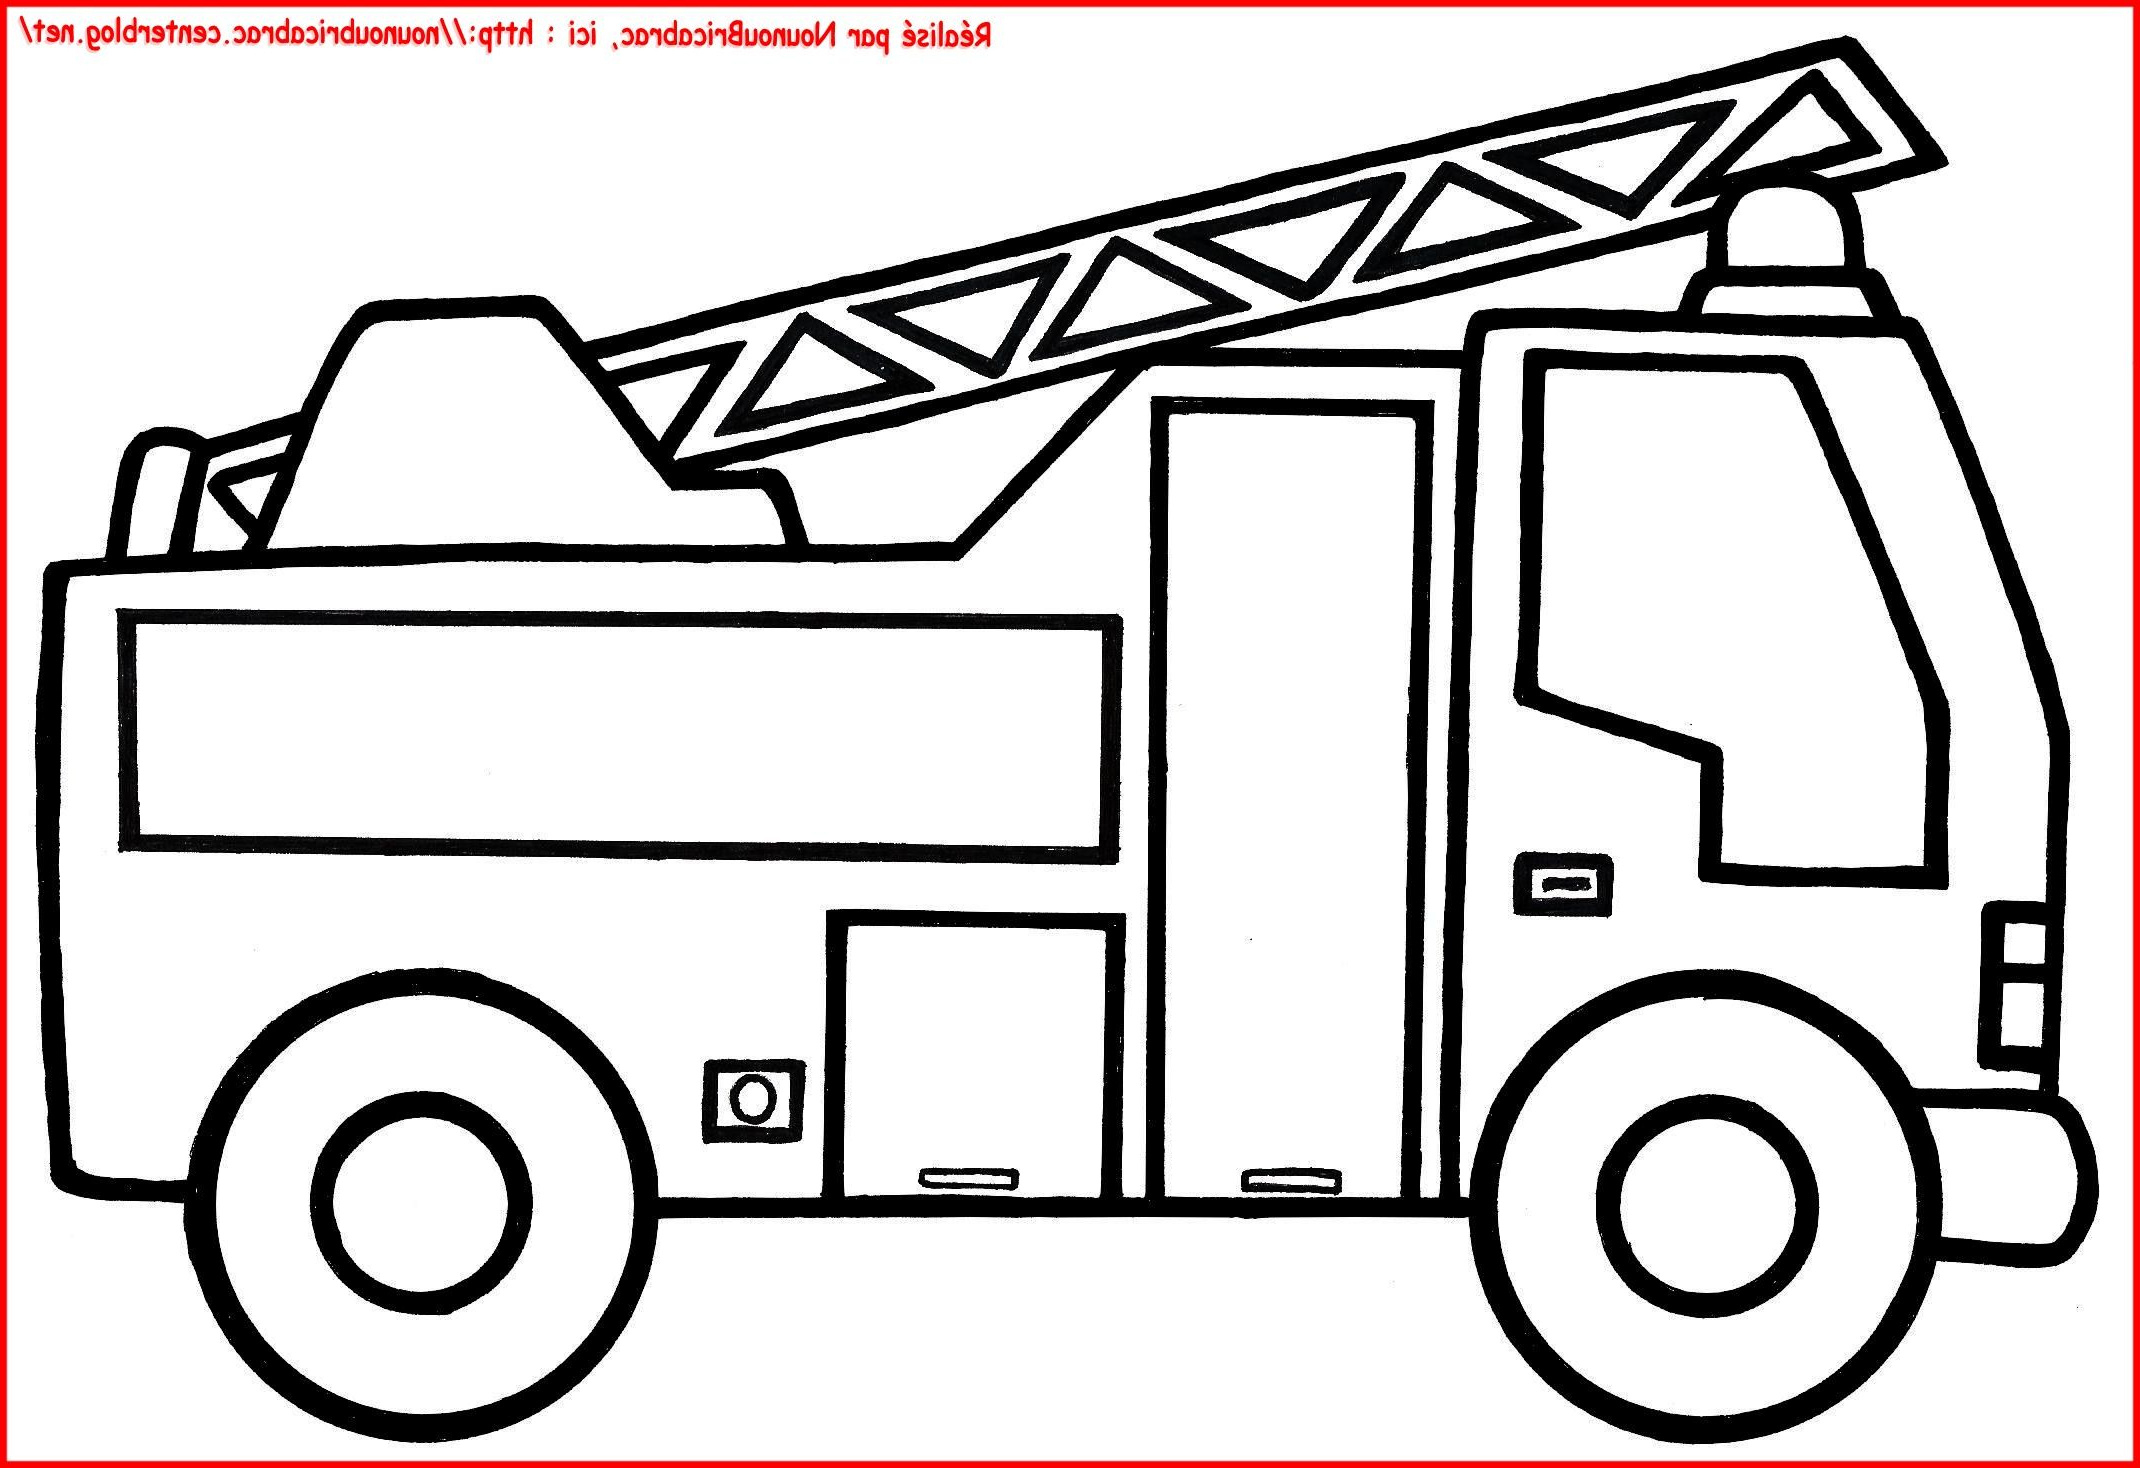 Dessin Camion De Pompier Cool Photographie Camion De Pompier À Colorier avec Camion De Pompier A Imprimer